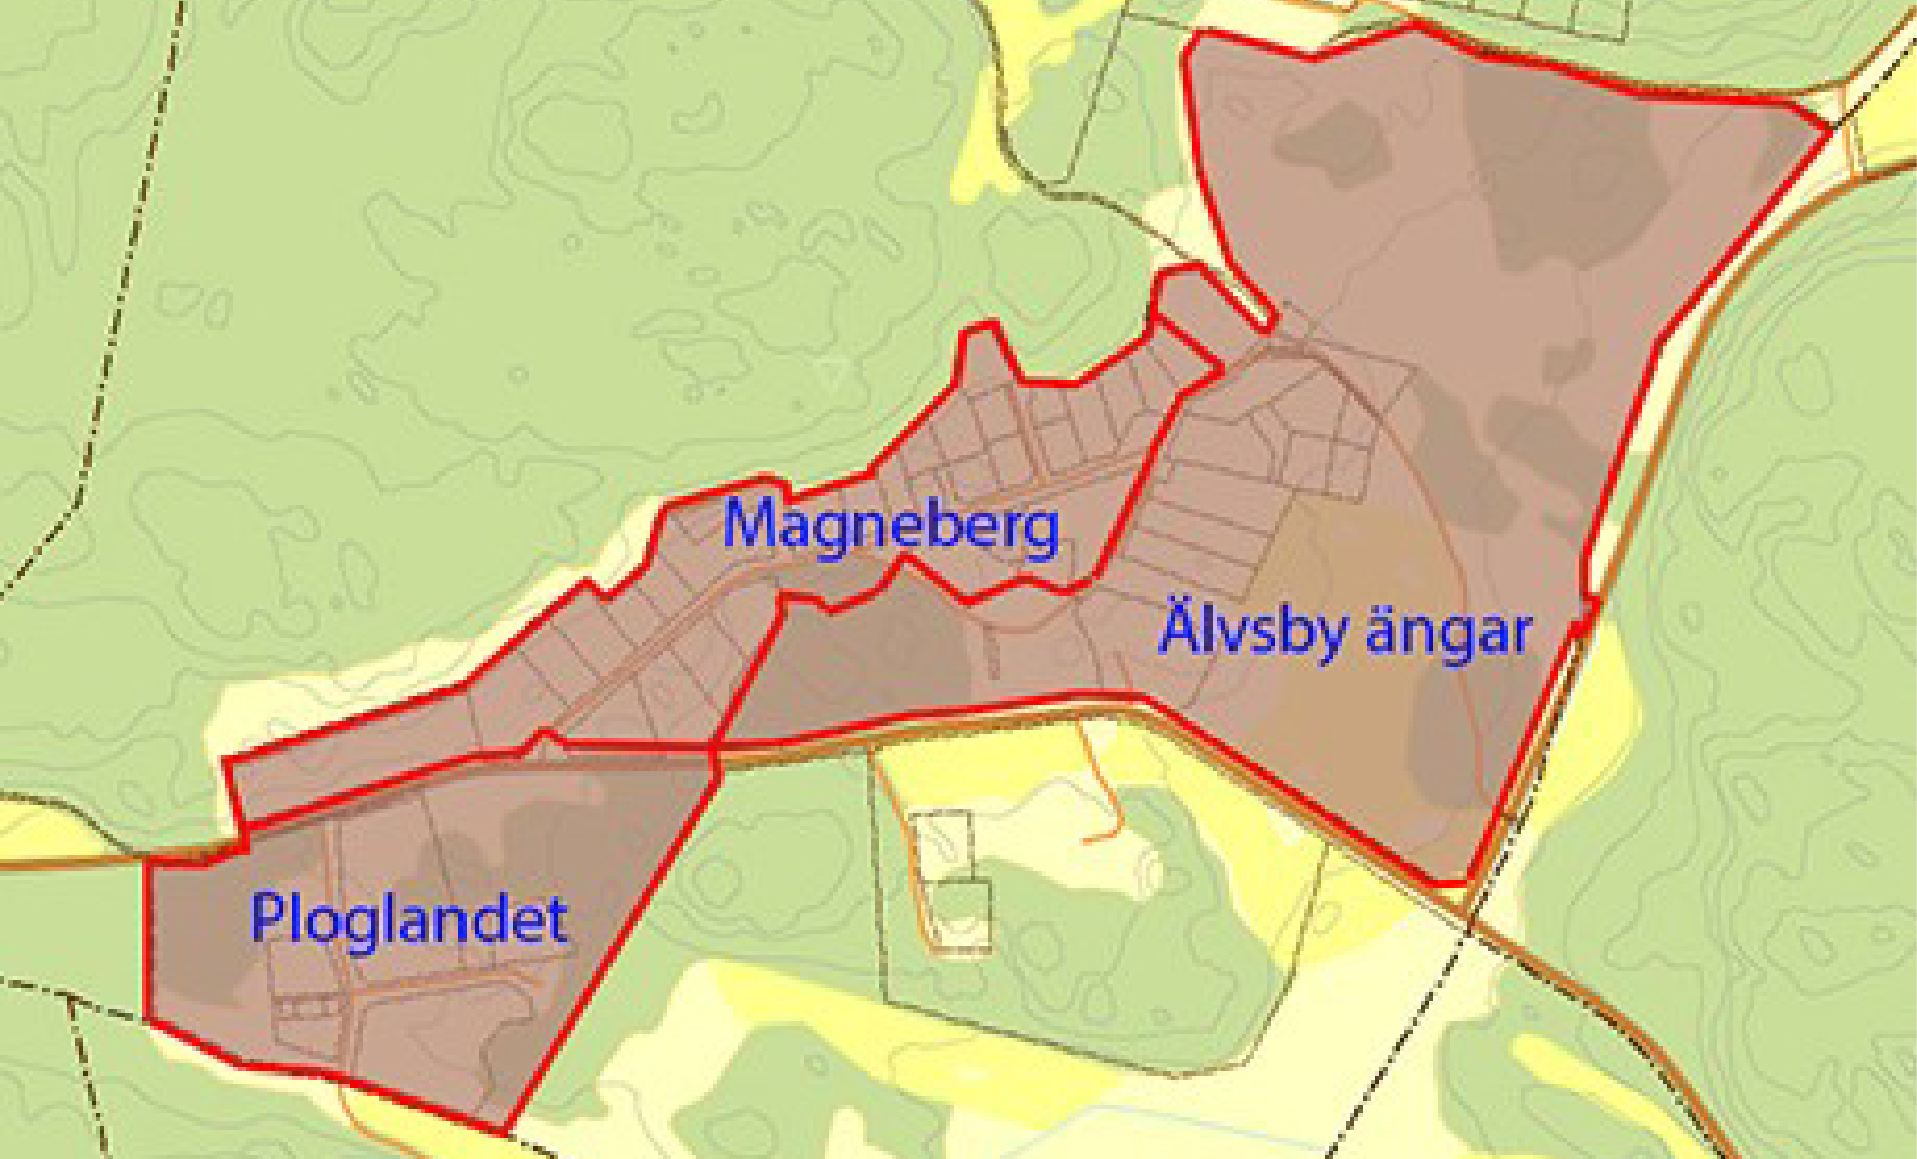 kartillustration Ploglandet, Magneberg och Älvsby ängar